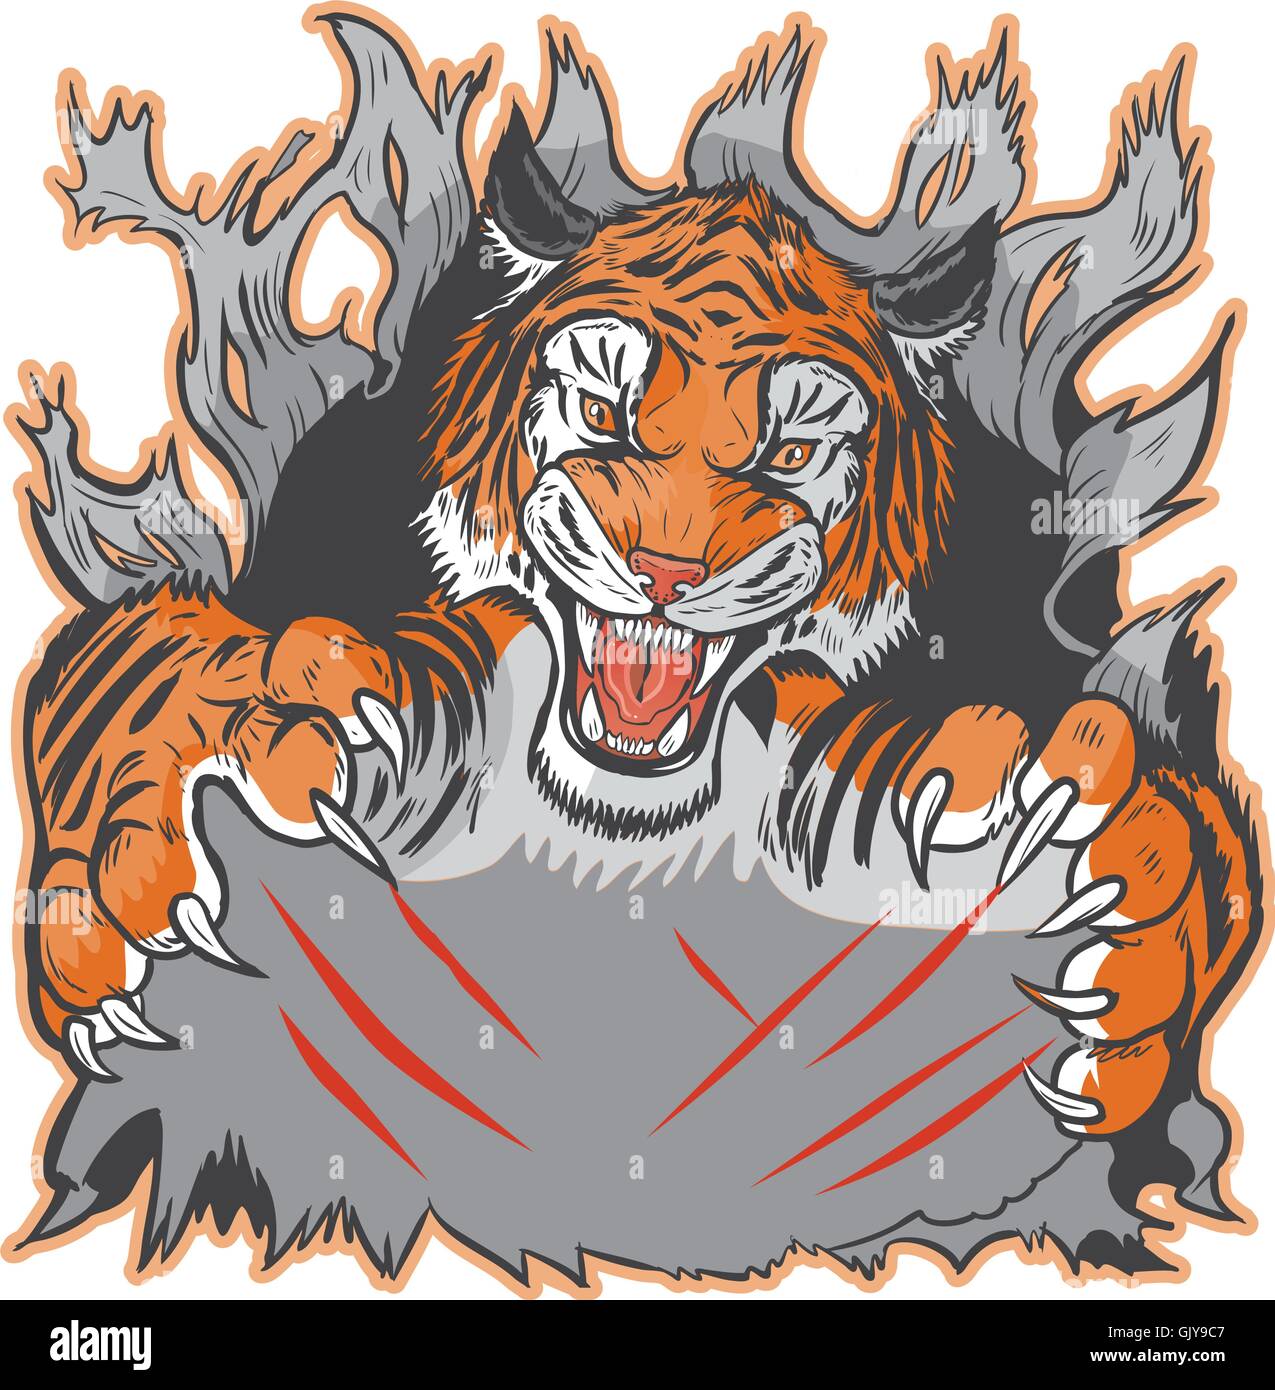 scared tiger clip art mascot